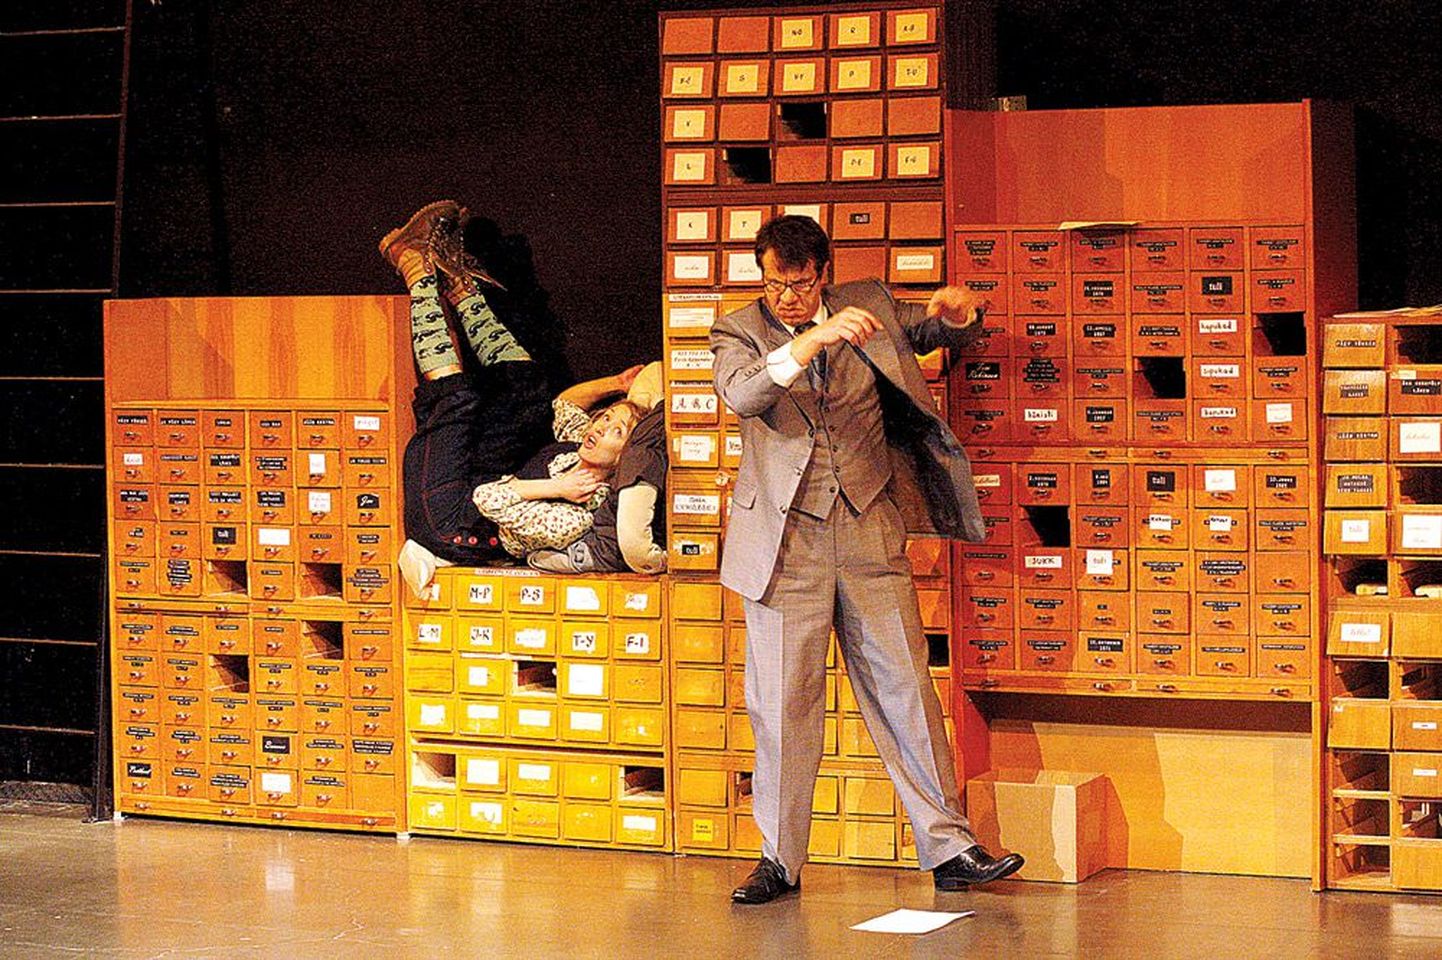 Kunstnik Liisa Soolepa kujundatud lavastuses «Tappa laulurästast» mängib Hannes Kaljujärv lesestunud advokaati Atticus Finchi. Tema tütart Nirksilma kehastab Liisa Pulk.